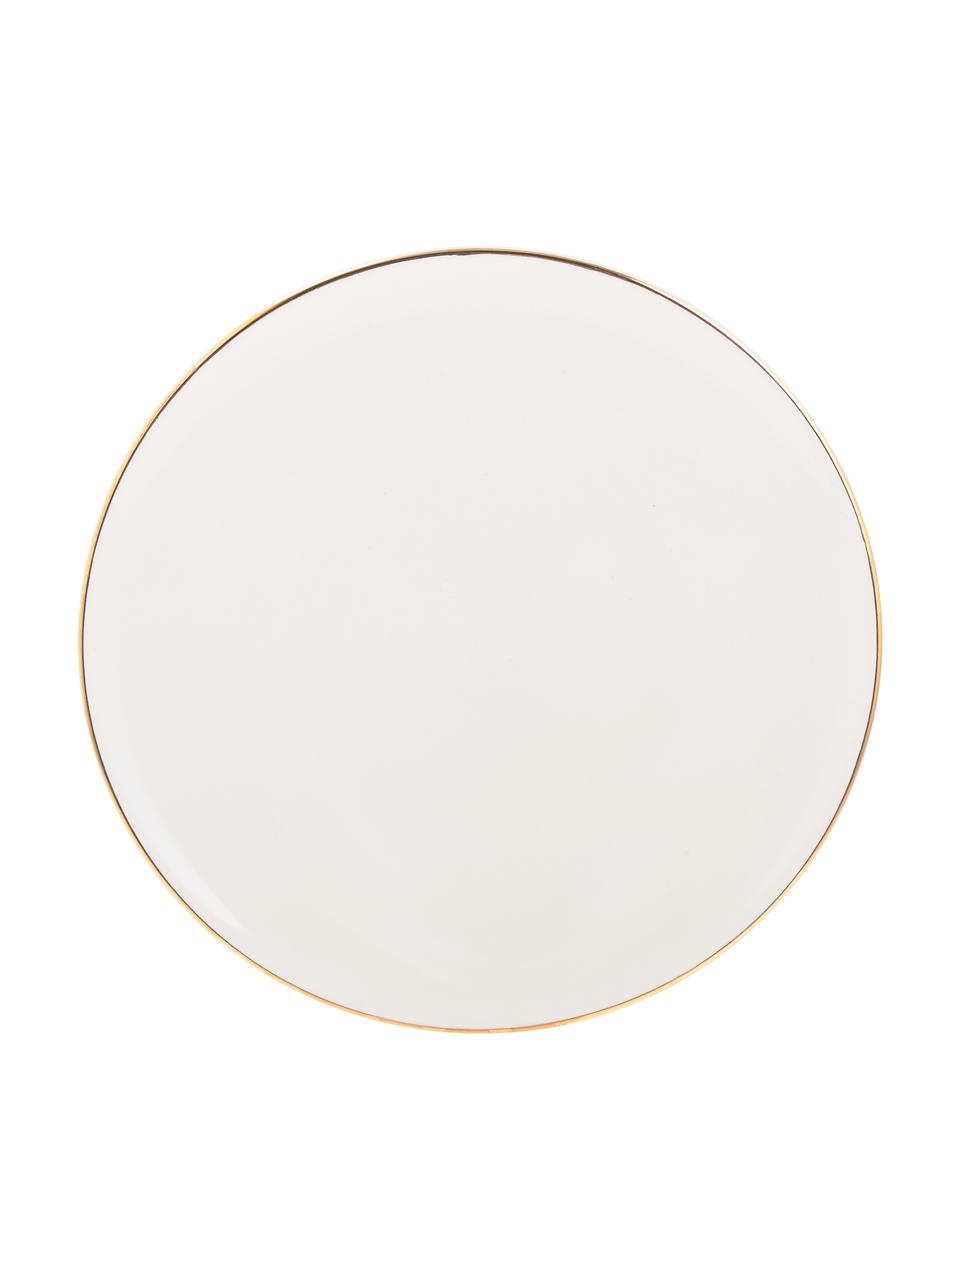 Ručně vyrobený snídaňový talíř se zlatým okrajem Allure, 6 ks, Keramika, Bílá, zlatá, Ø 21 cm